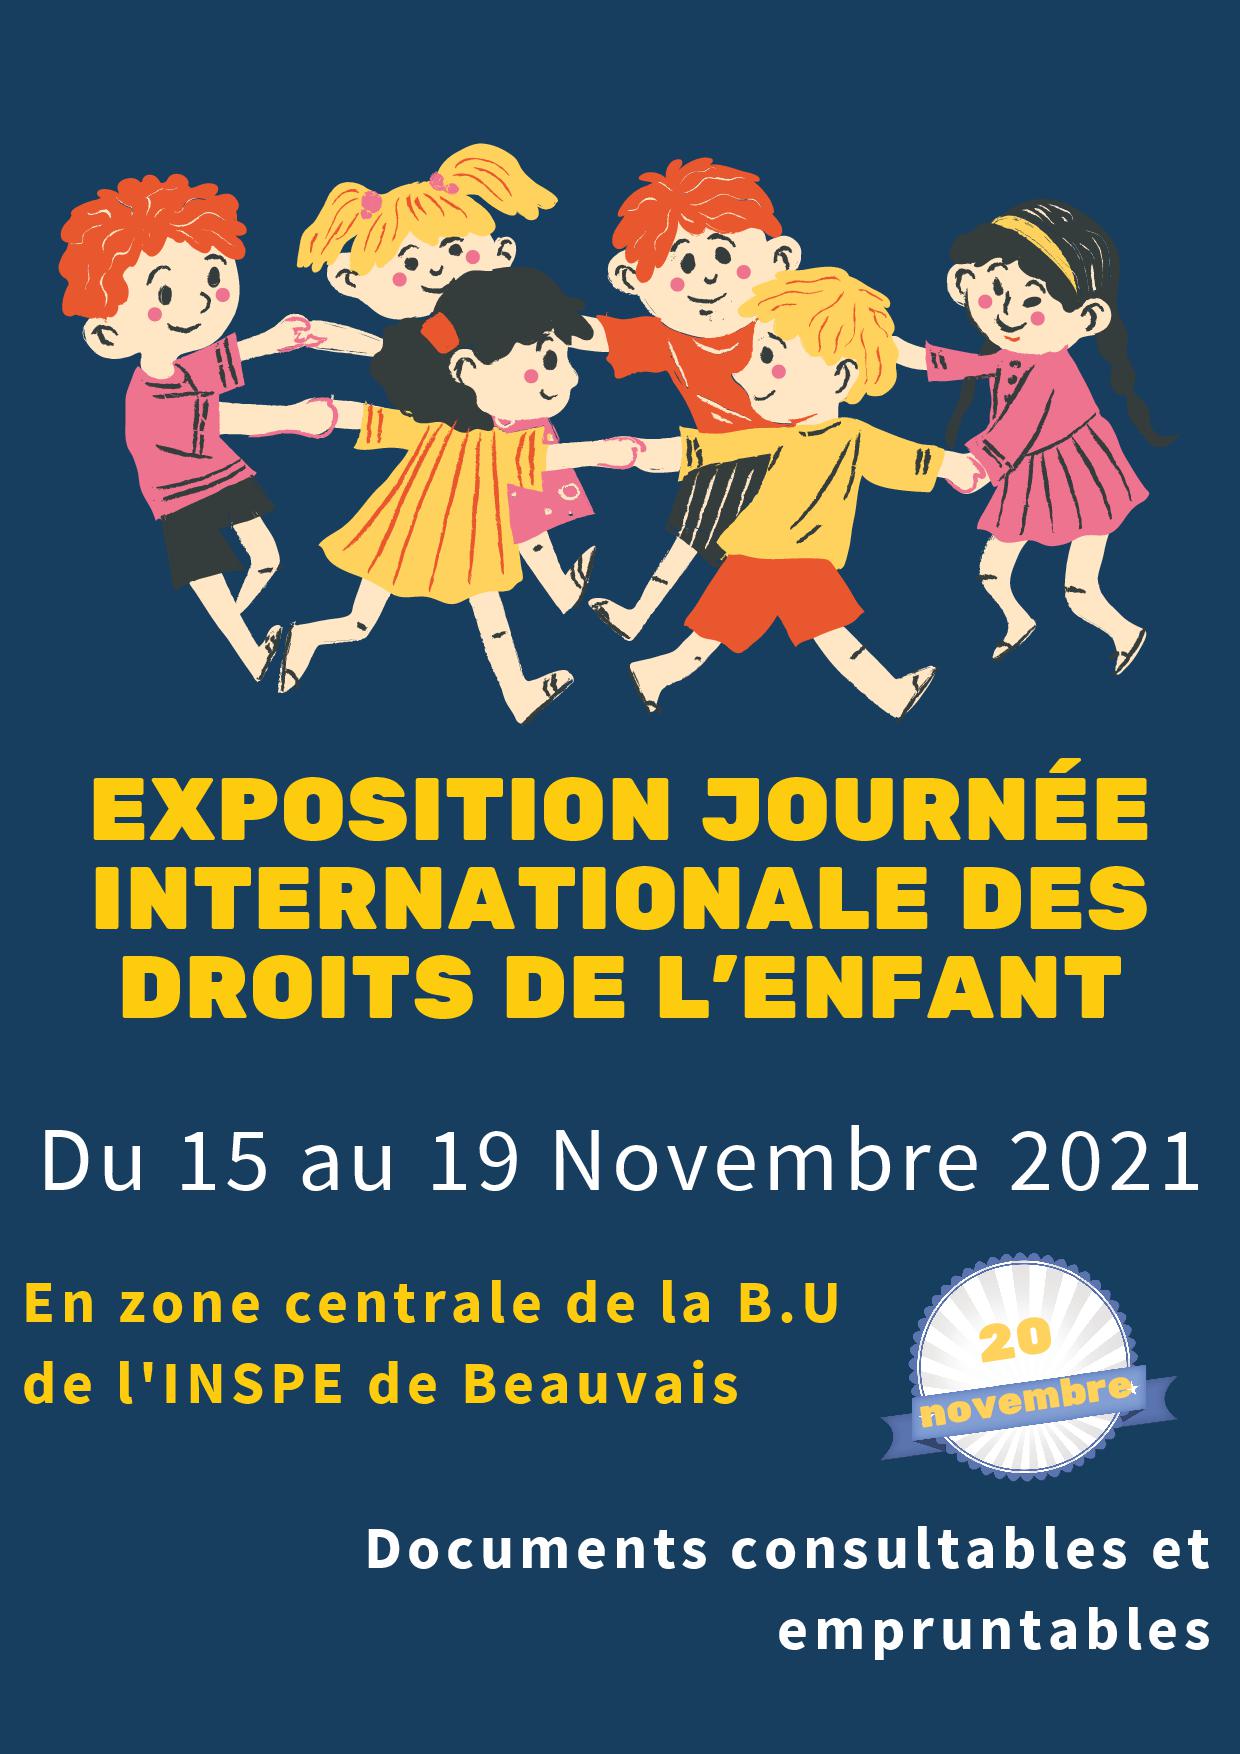 BU INSPE de Beauvais : exposition d'ouvrages sur la thématique "journée des droits de l'enfant"